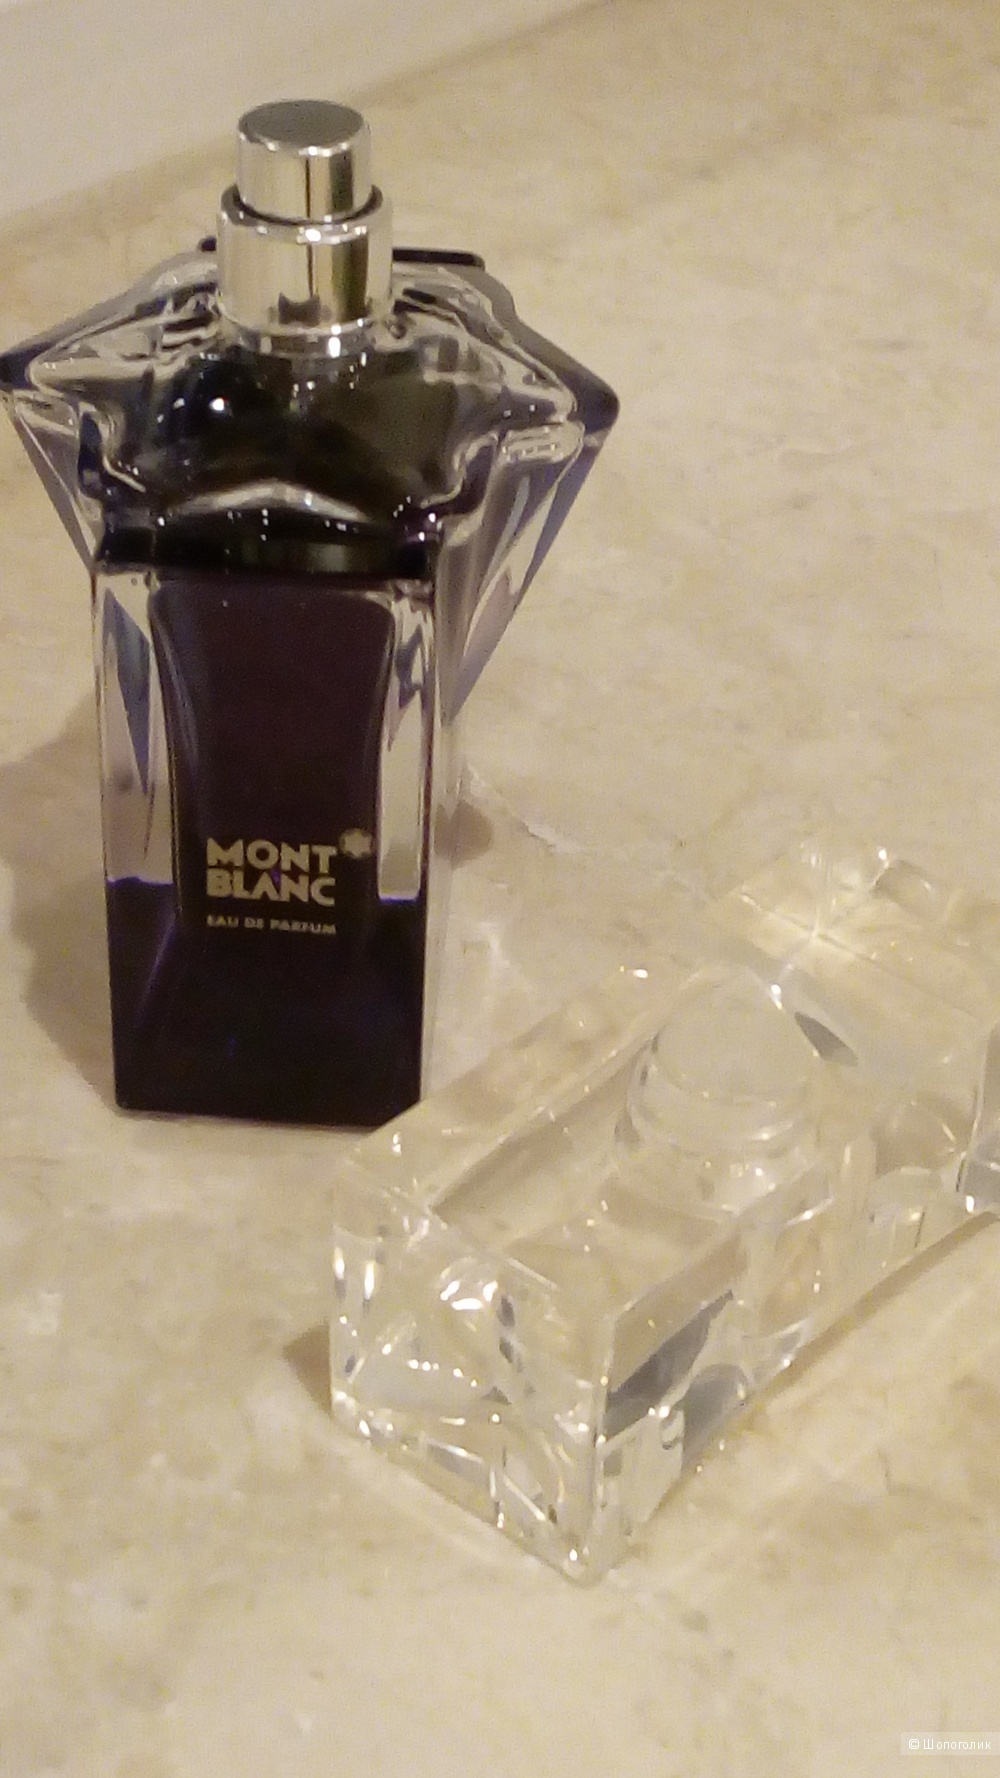 Женская парфюмированная вода Femme de MontBlanc, 75 ml